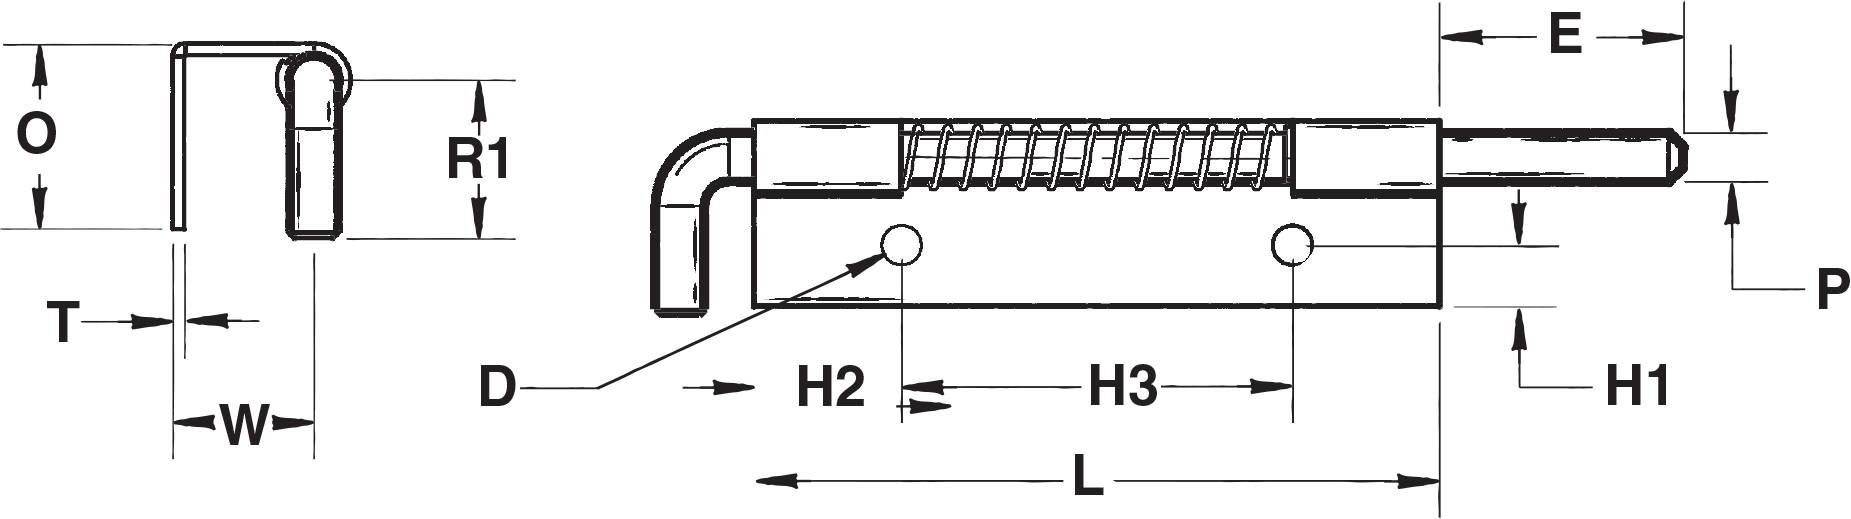 716-diagram